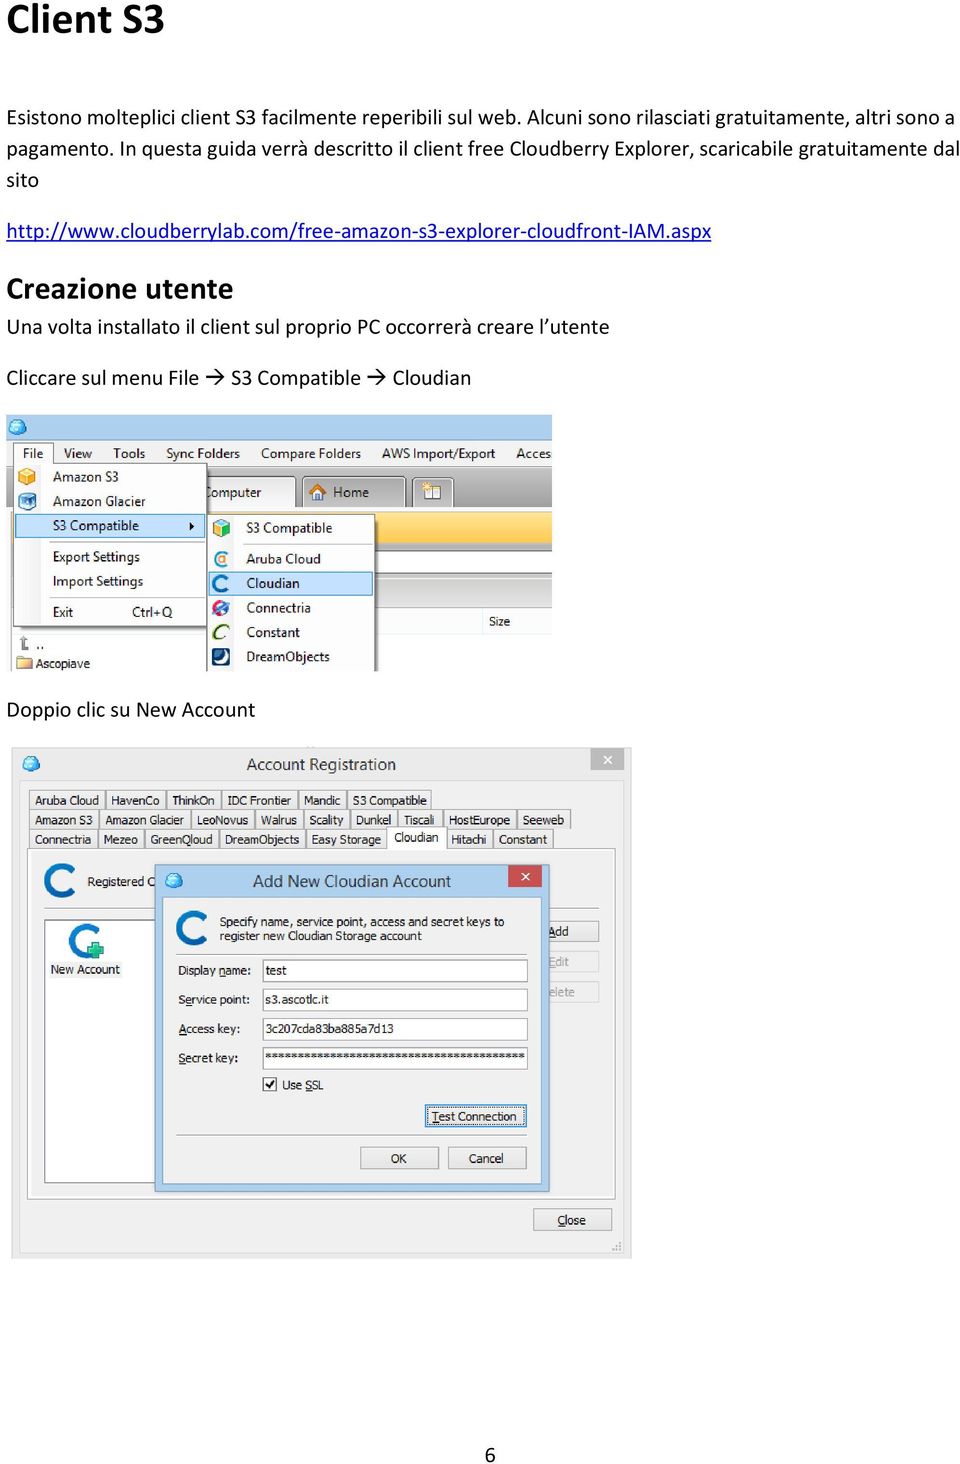 In questa guida verrà descritto il client free Cloudberry Explorer, scaricabile gratuitamente dal sito http://www.